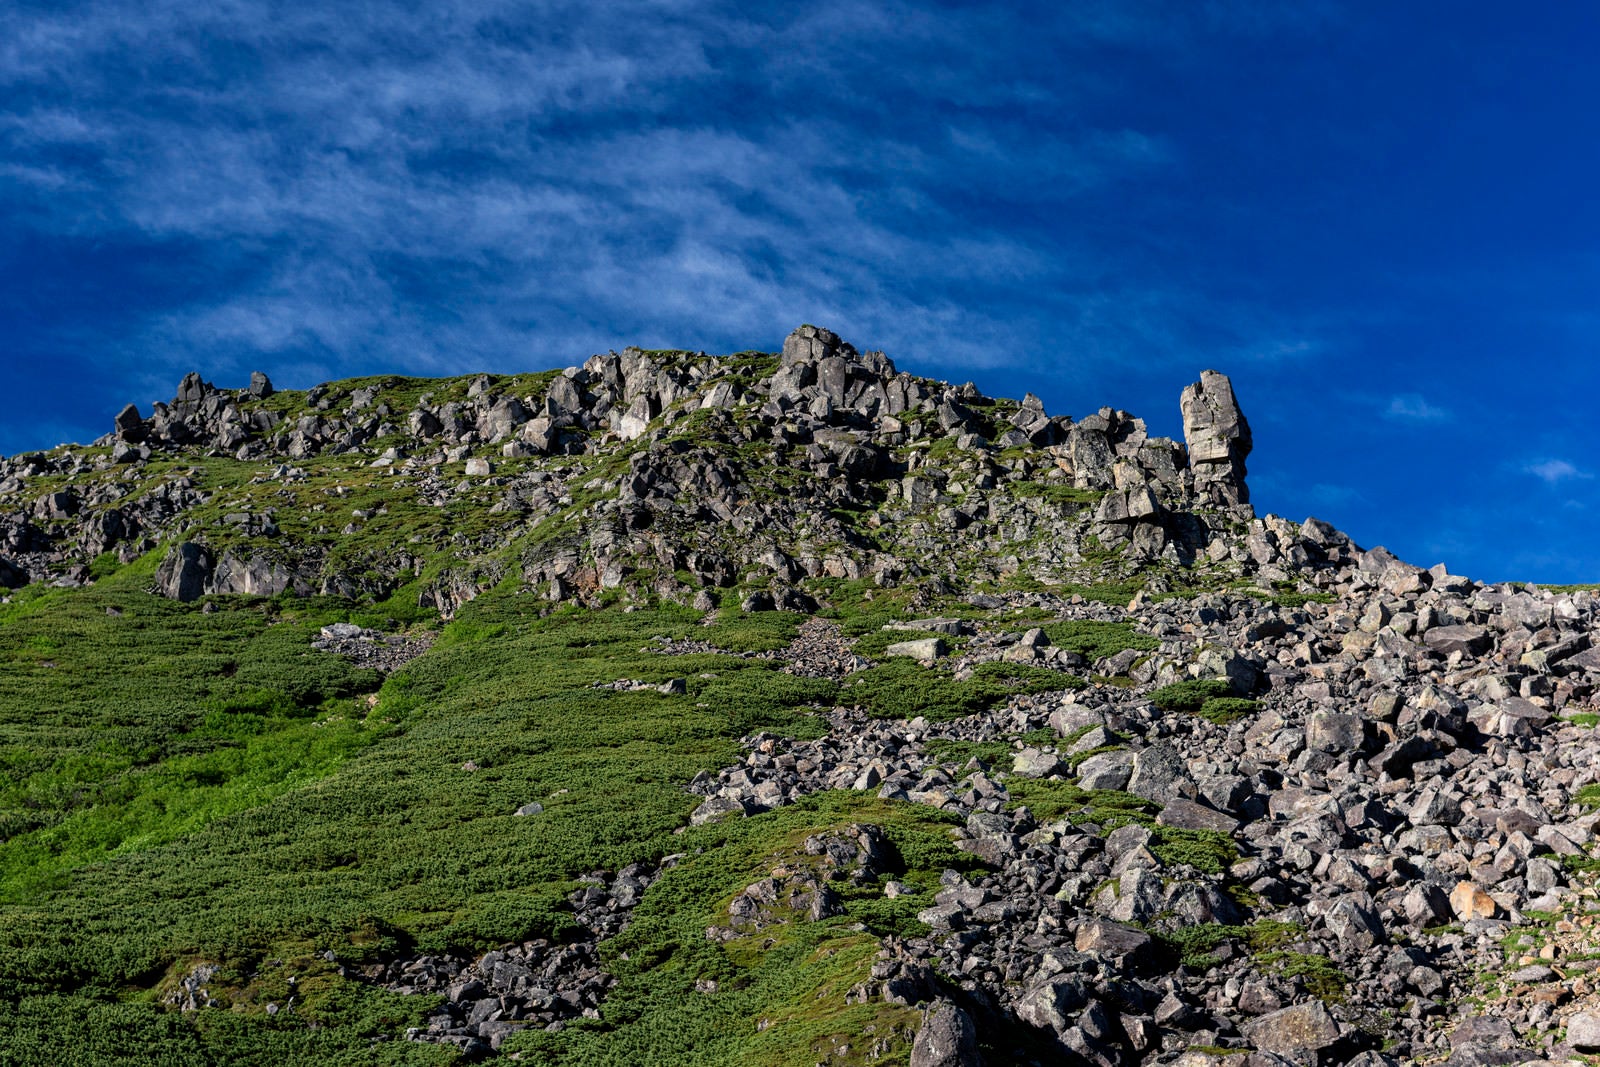 「乗鞍岳稜線の岩だらけの景色」の写真